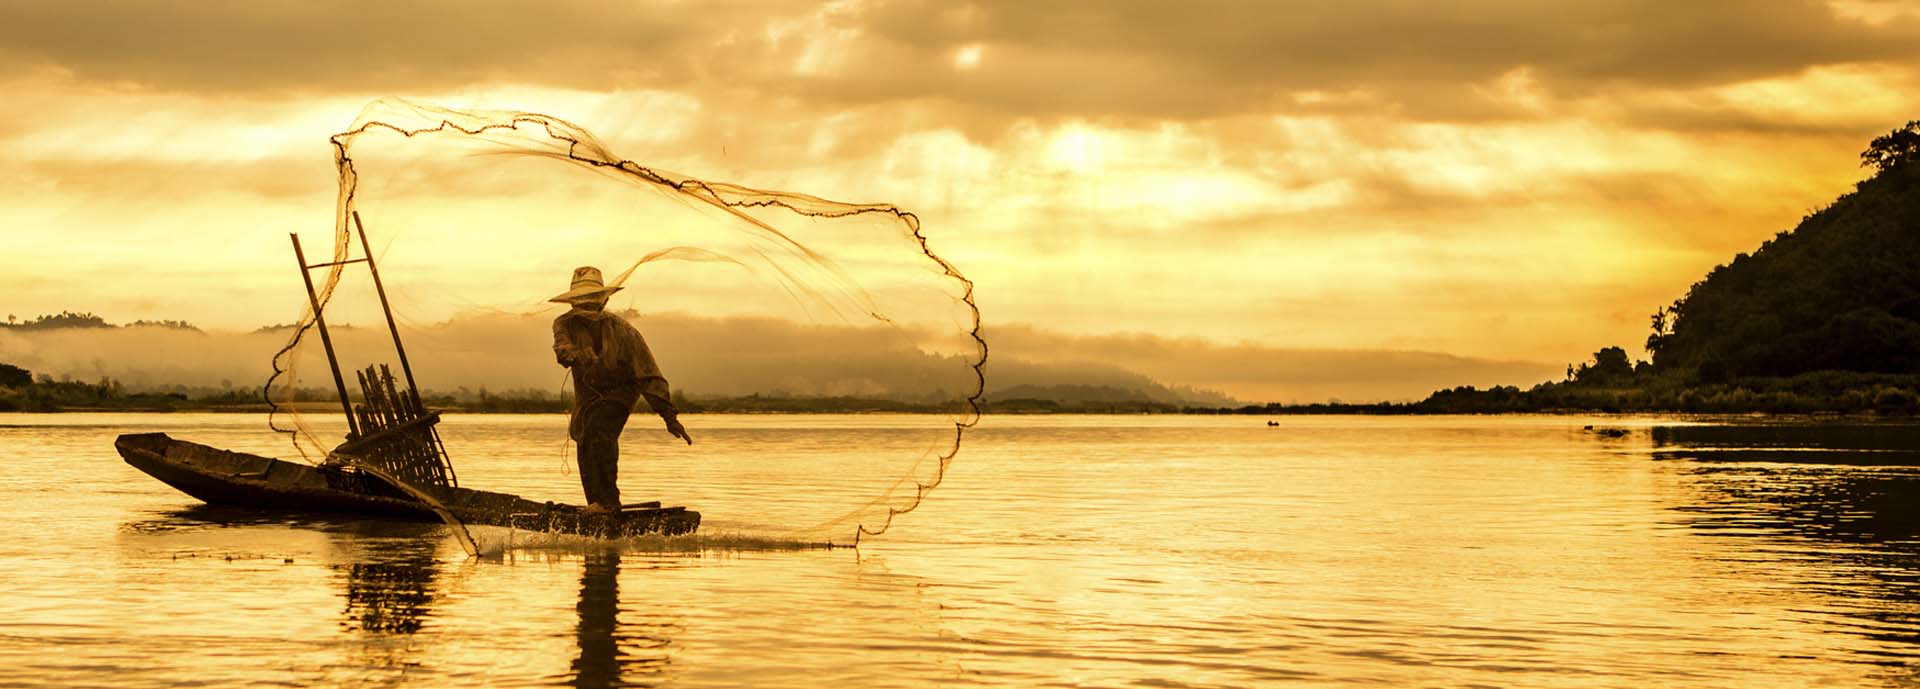 Fishing on lake at sunset